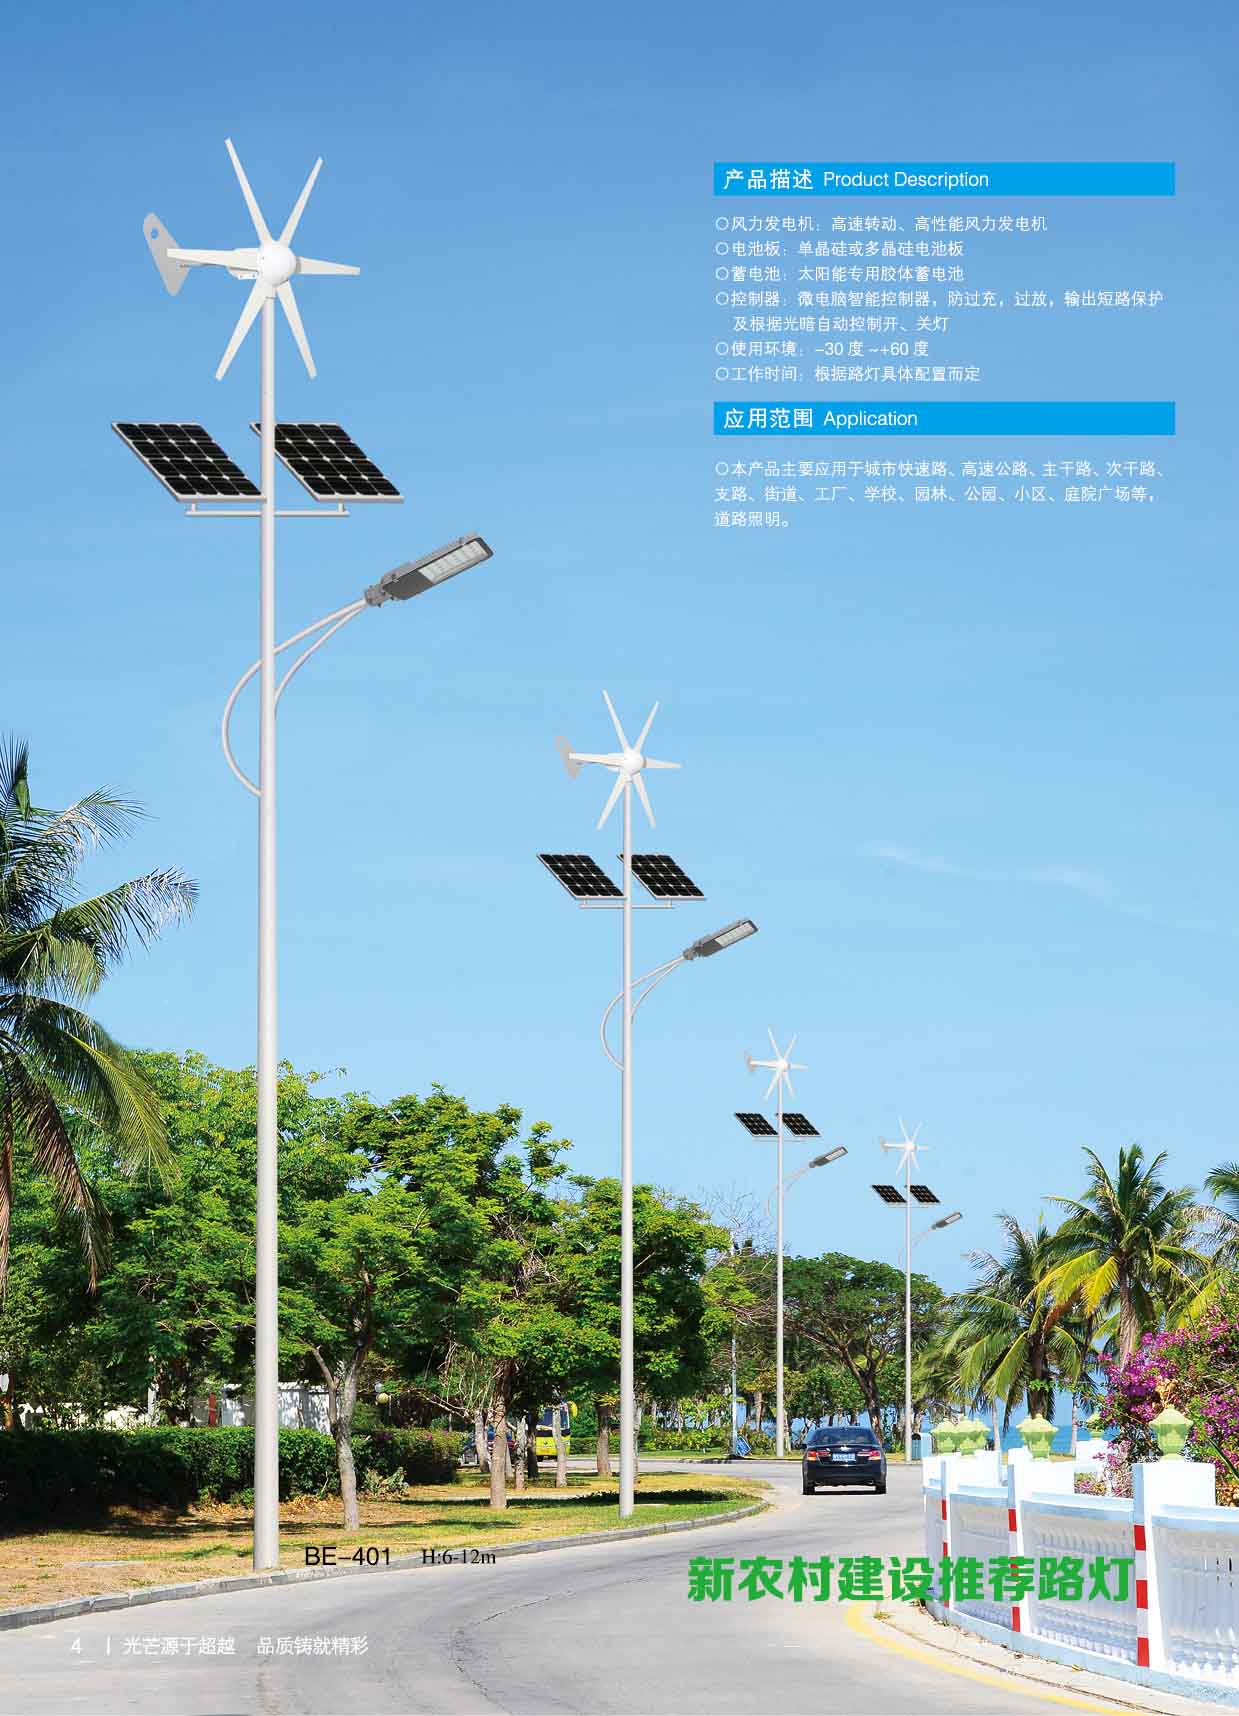 中山太阳能路灯厂家需要严格准守生产标准执行为宜